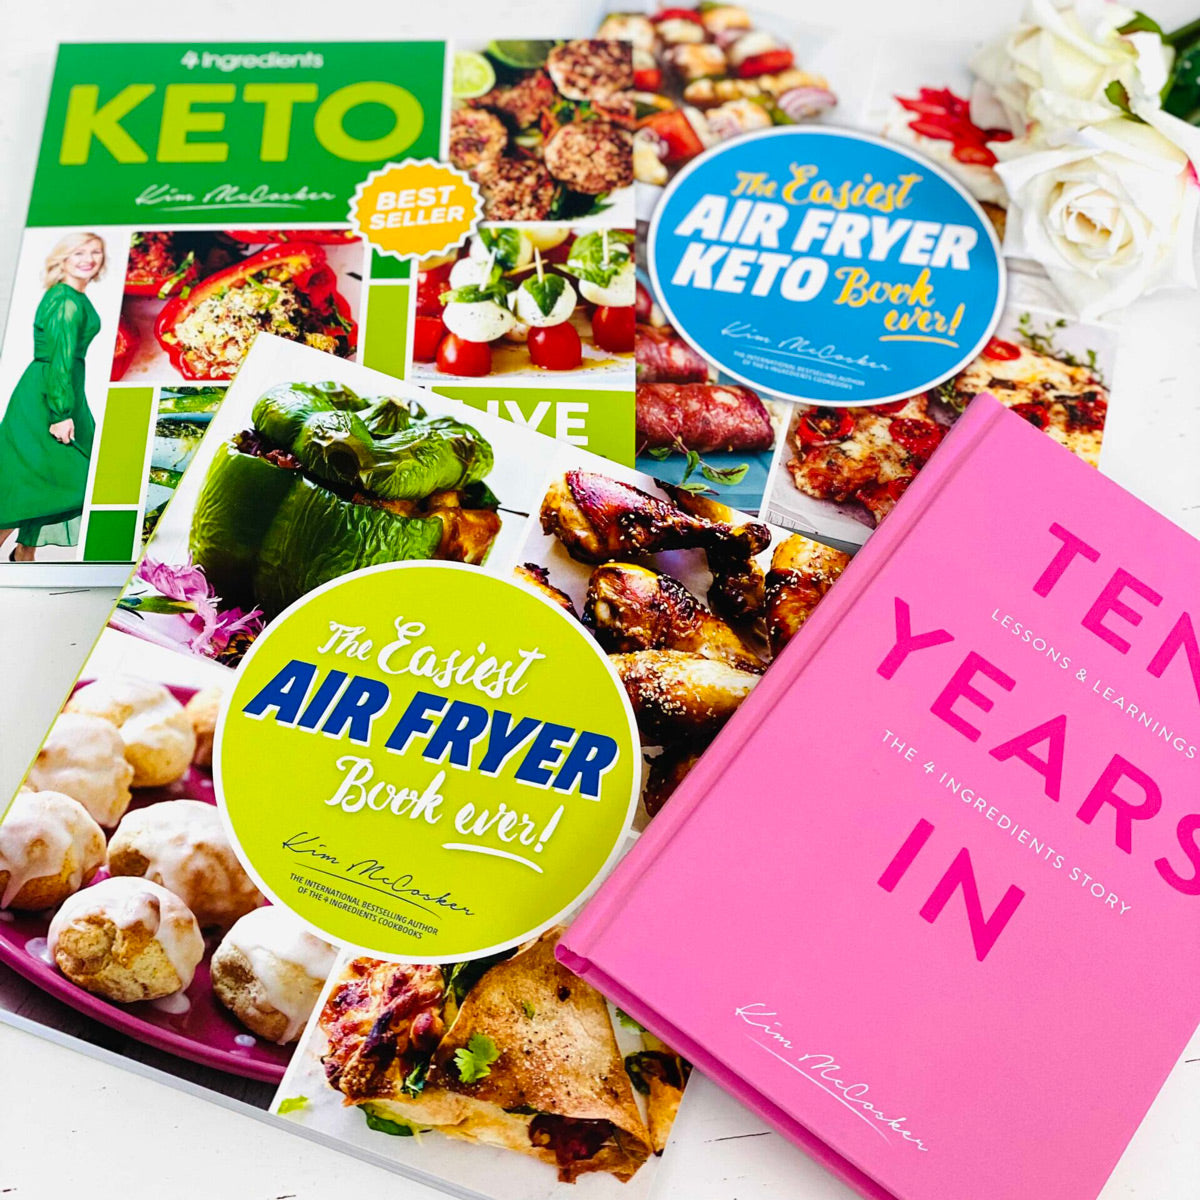 4 Ingredients KETO + The Easiest Air Fryer Book ever + The Easiest Air Fryer KETO Book ever + Free copy of Ten Years In